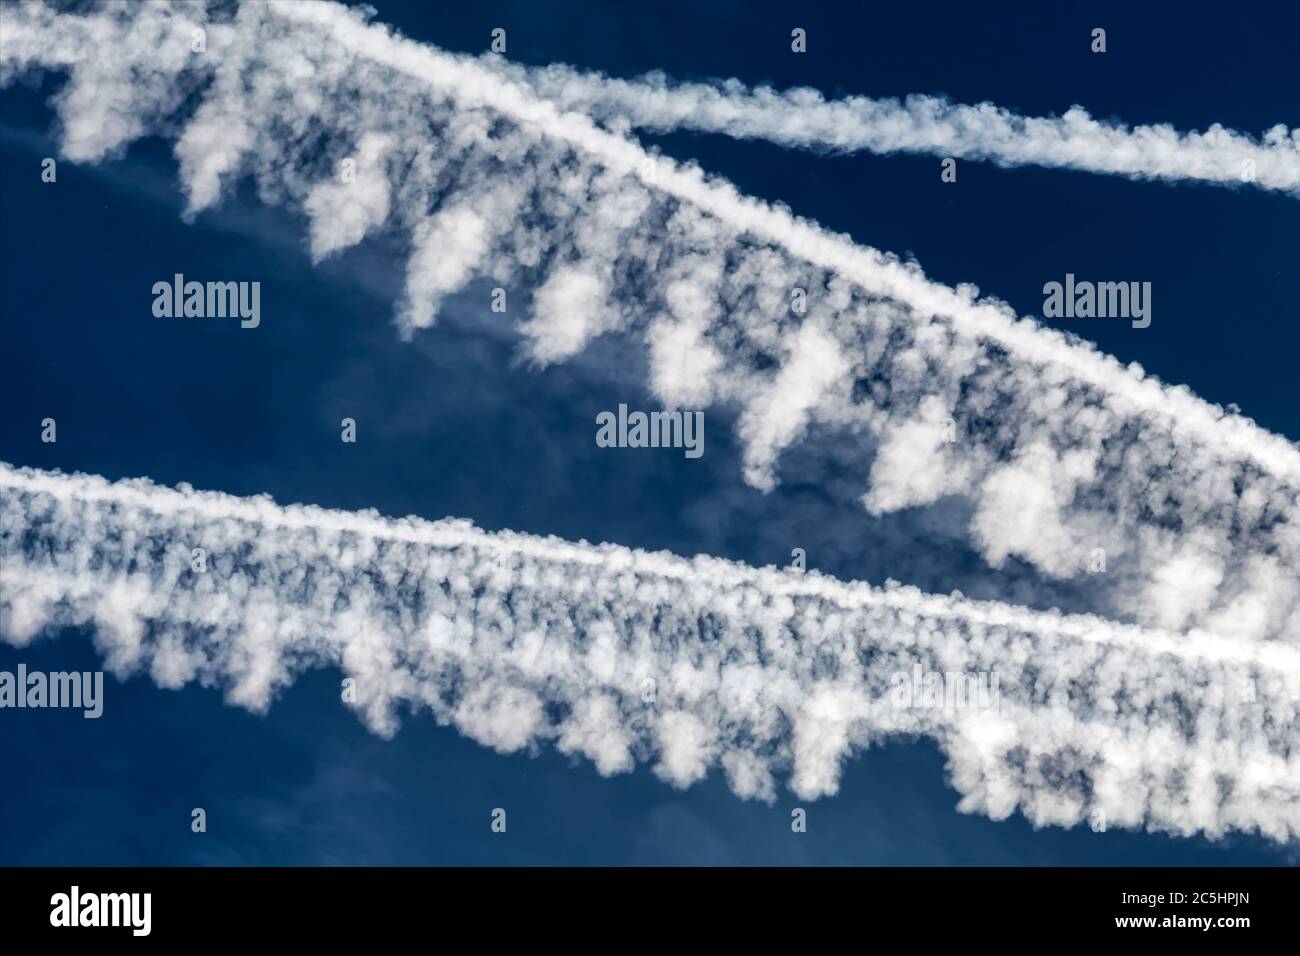 Les contrailles de plusieurs avions contre un ciel bleu. Photo symbolique du CO2, du changement climatique et de la protection de l'environnement. Banque D'Images